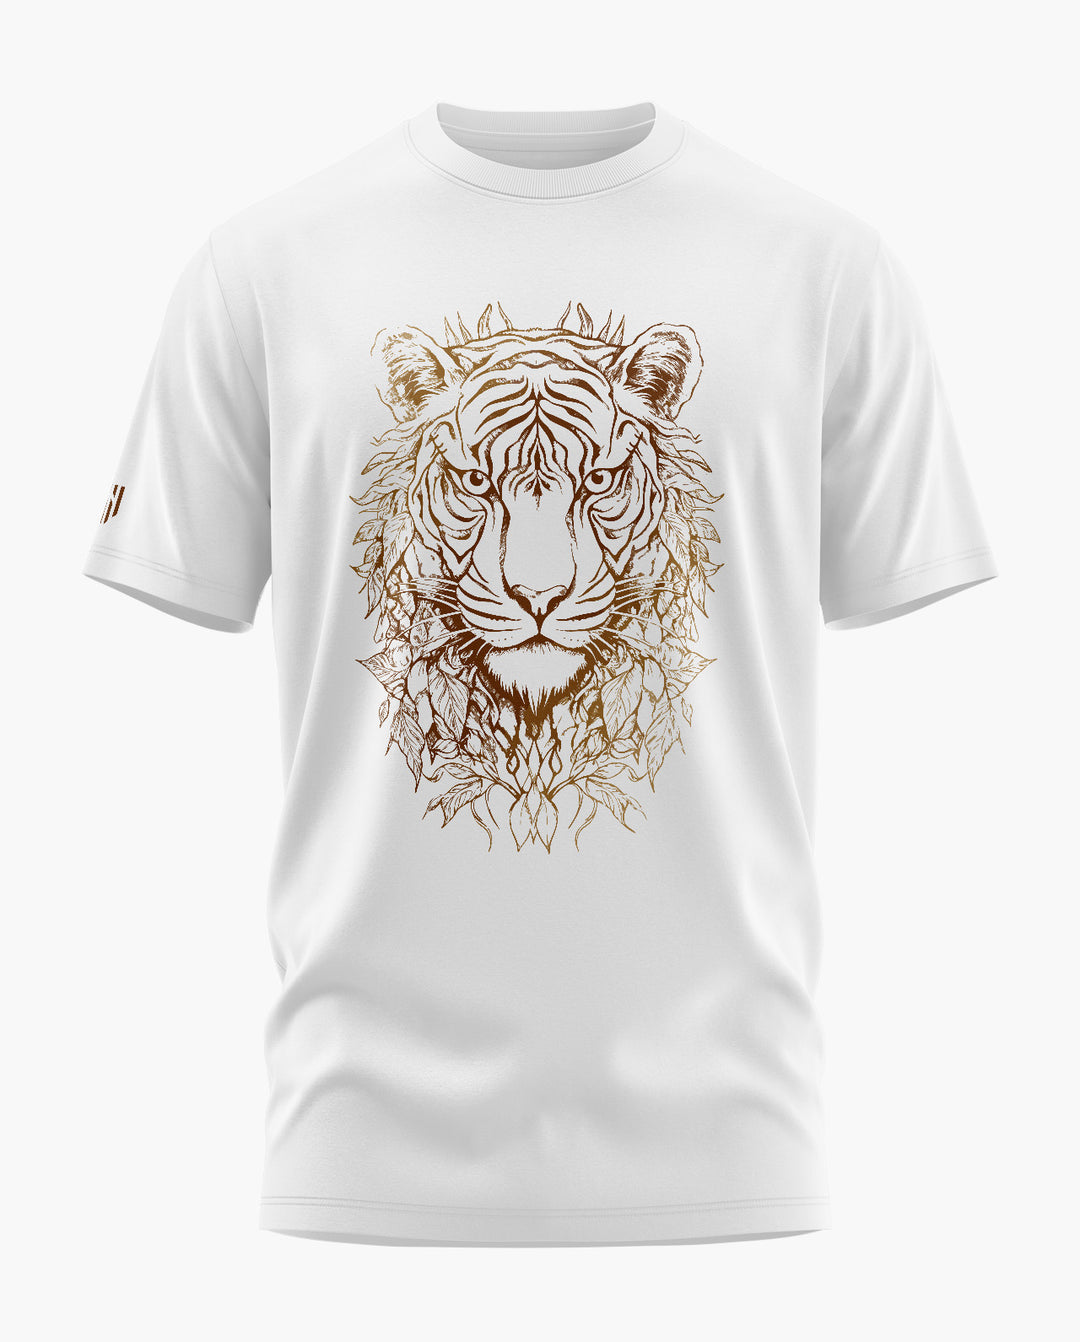 The Golden Tiger T-Shirt